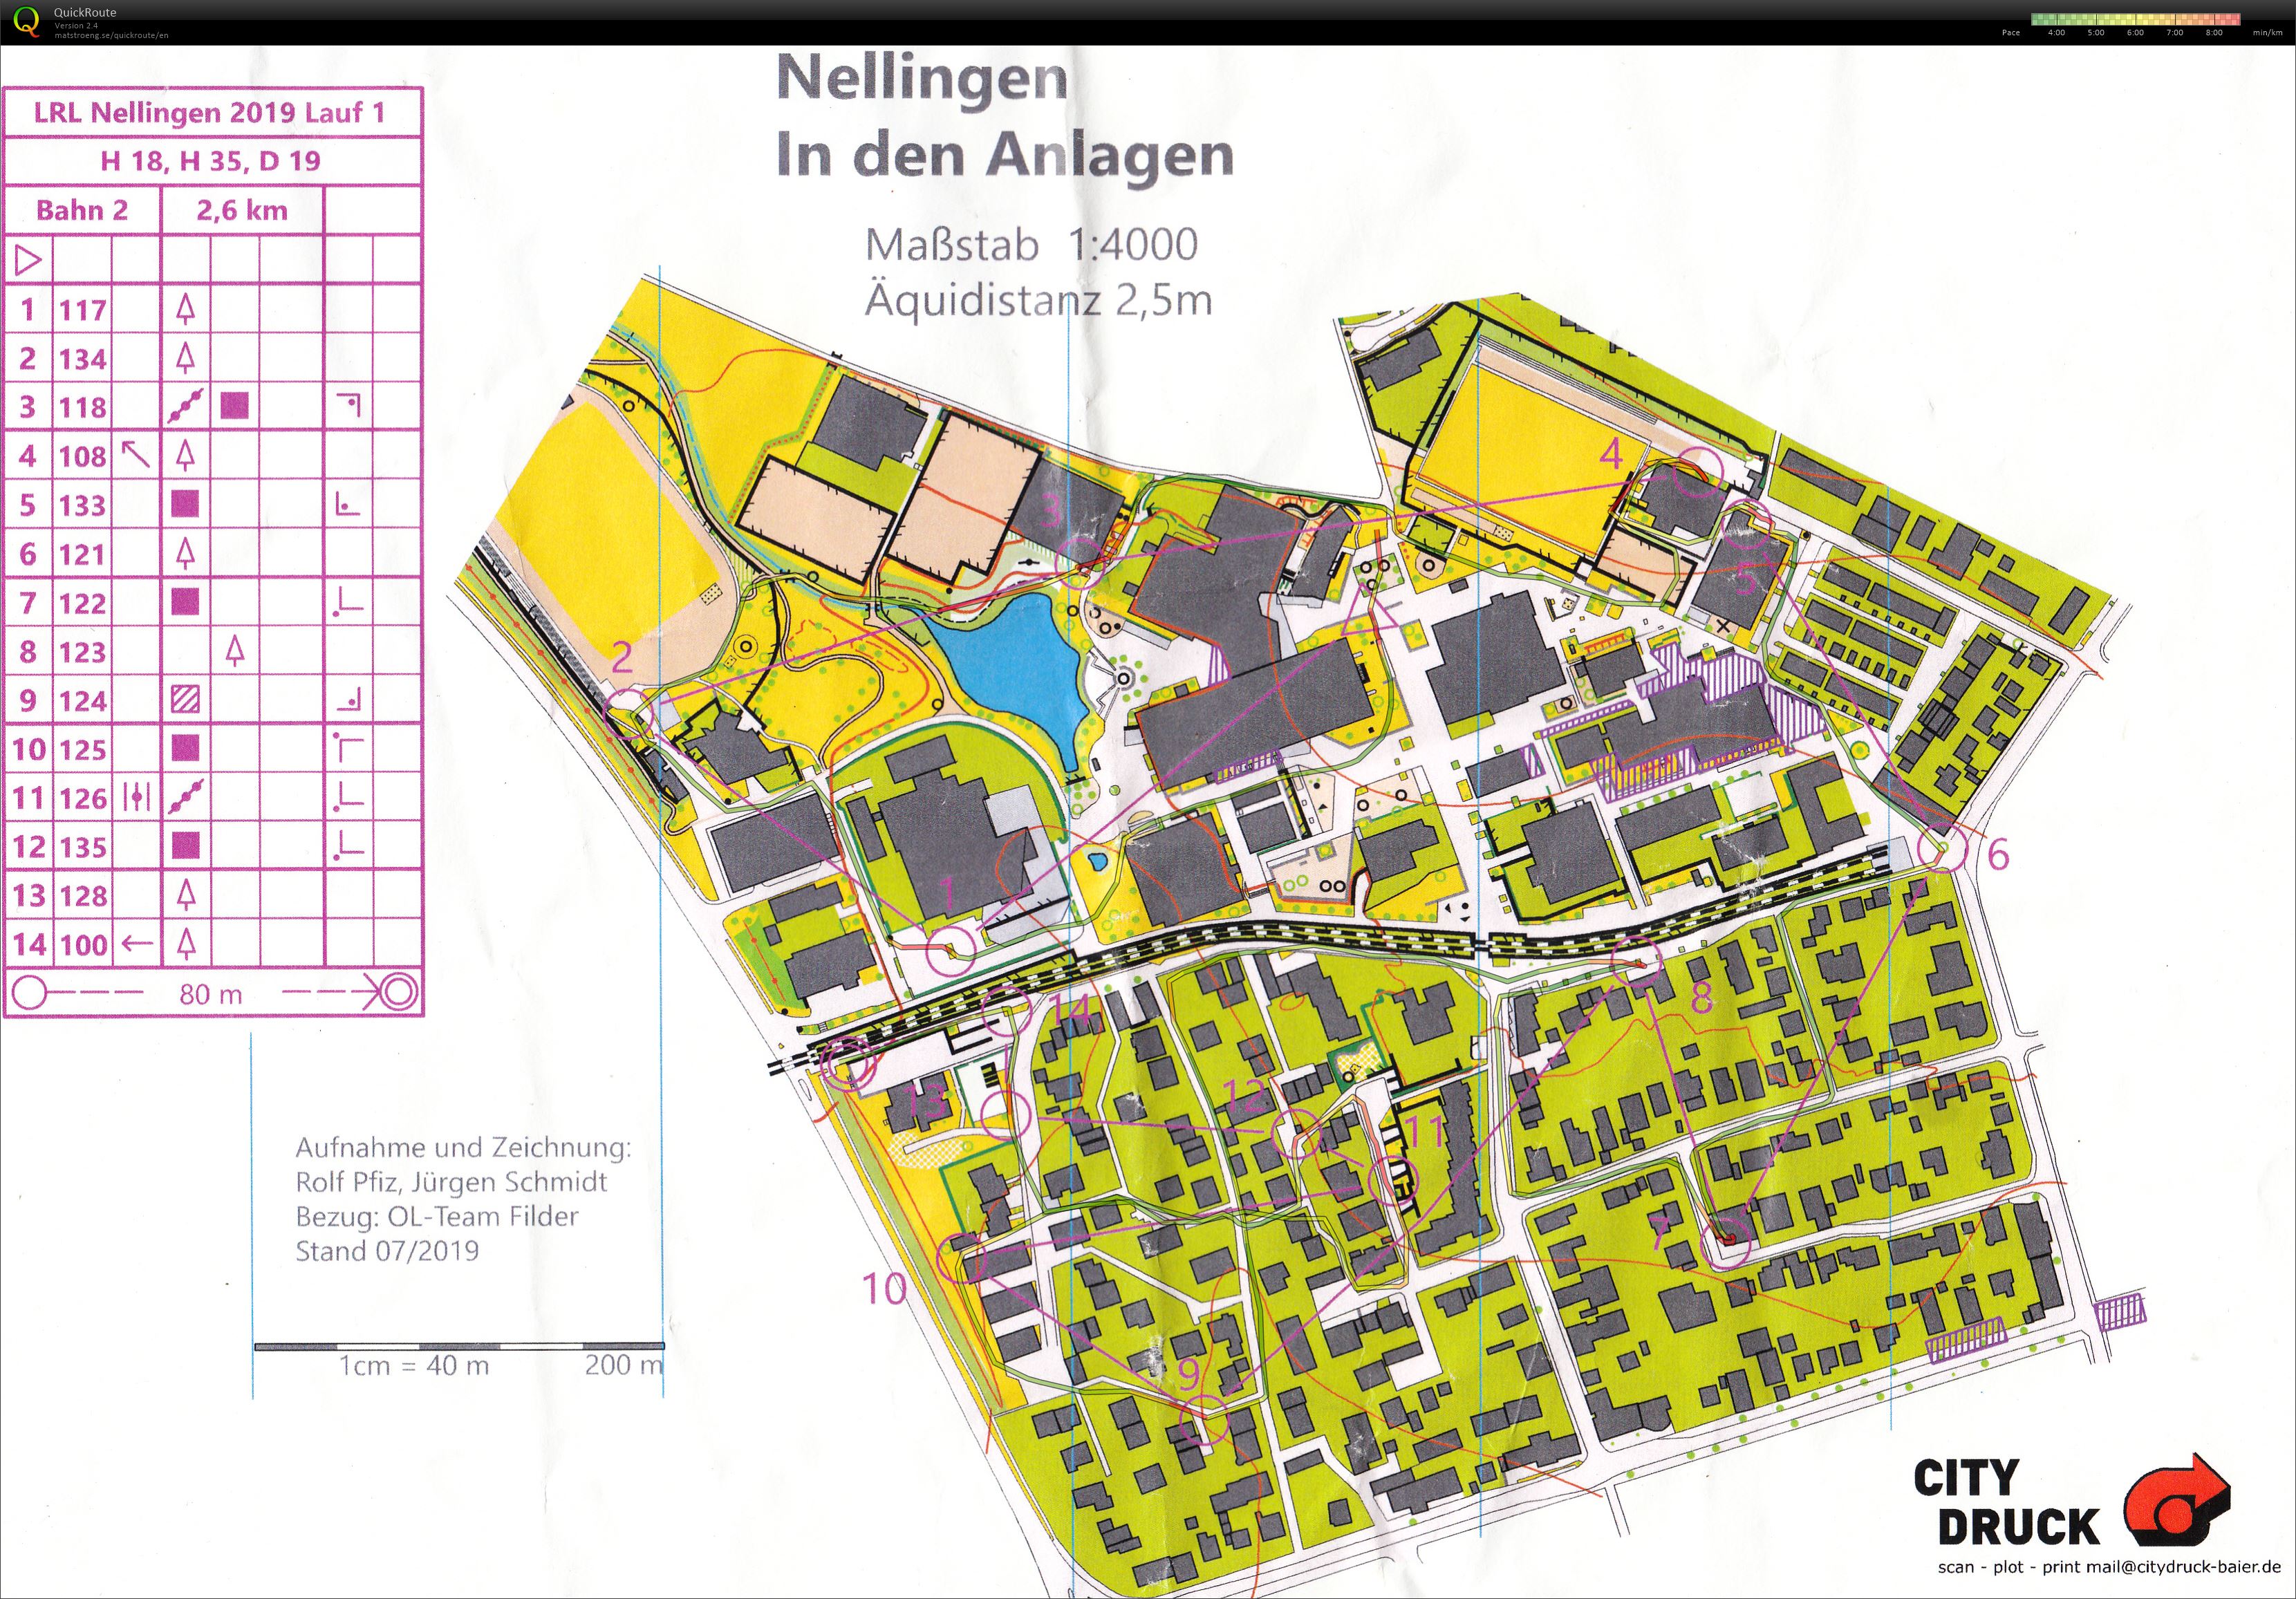 LRL Nellingen - 1 (20/07/2019)